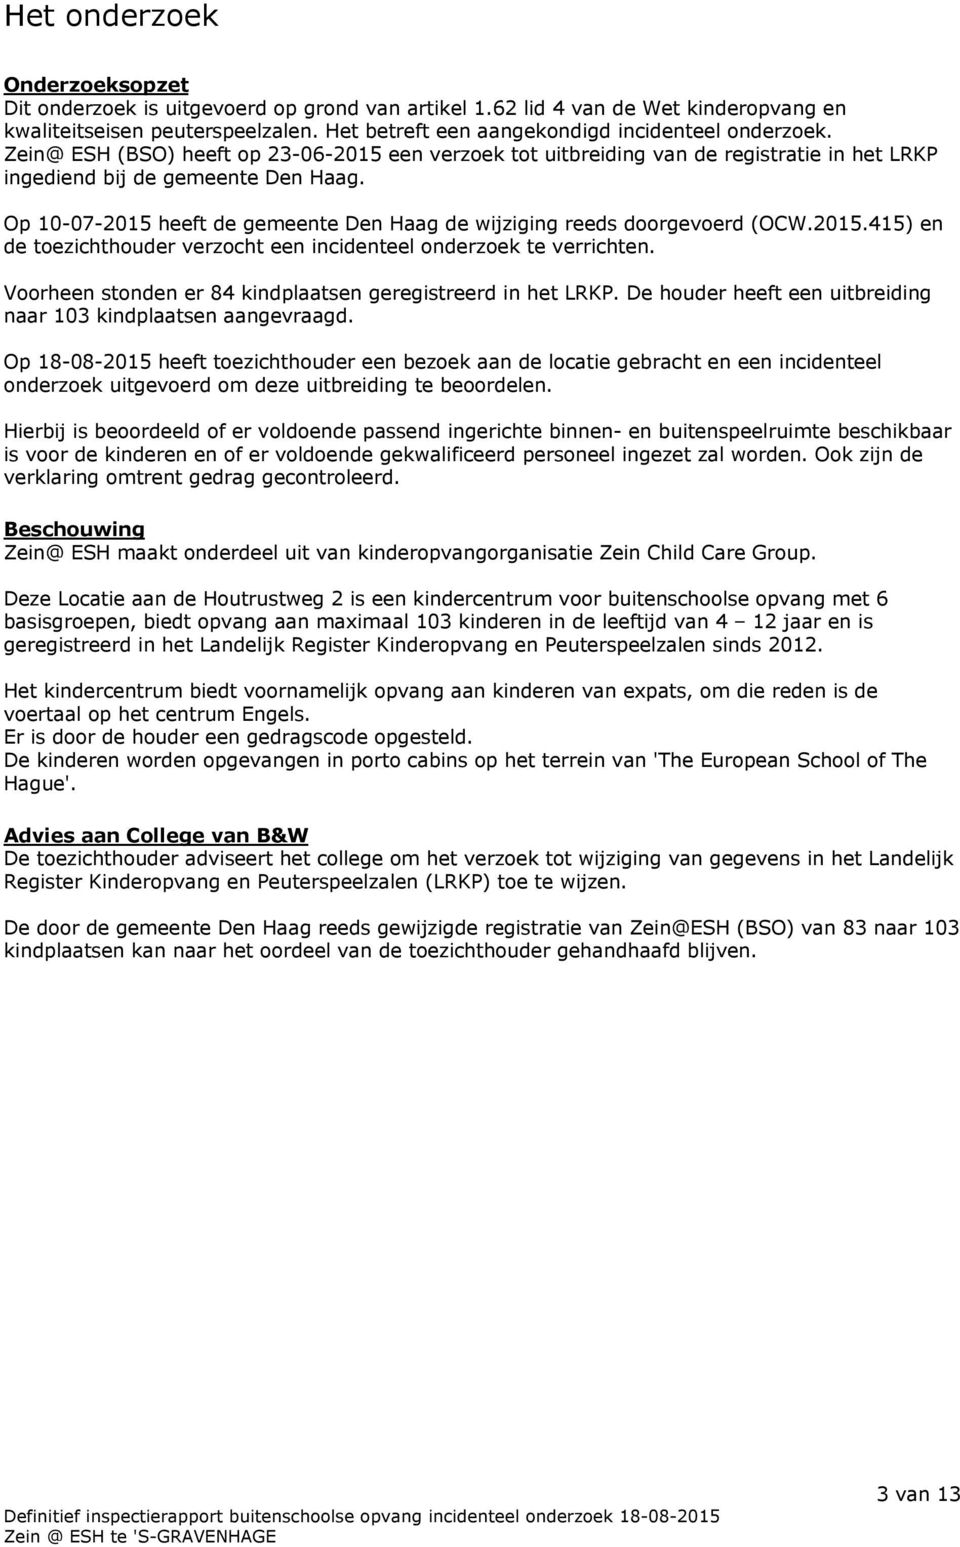 Op 10-07-2015 heeft de gemeente Den Haag de wijziging reeds doorgevoerd (OCW.2015.415) en de toezichthouder verzocht een incidenteel onderzoek te verrichten.